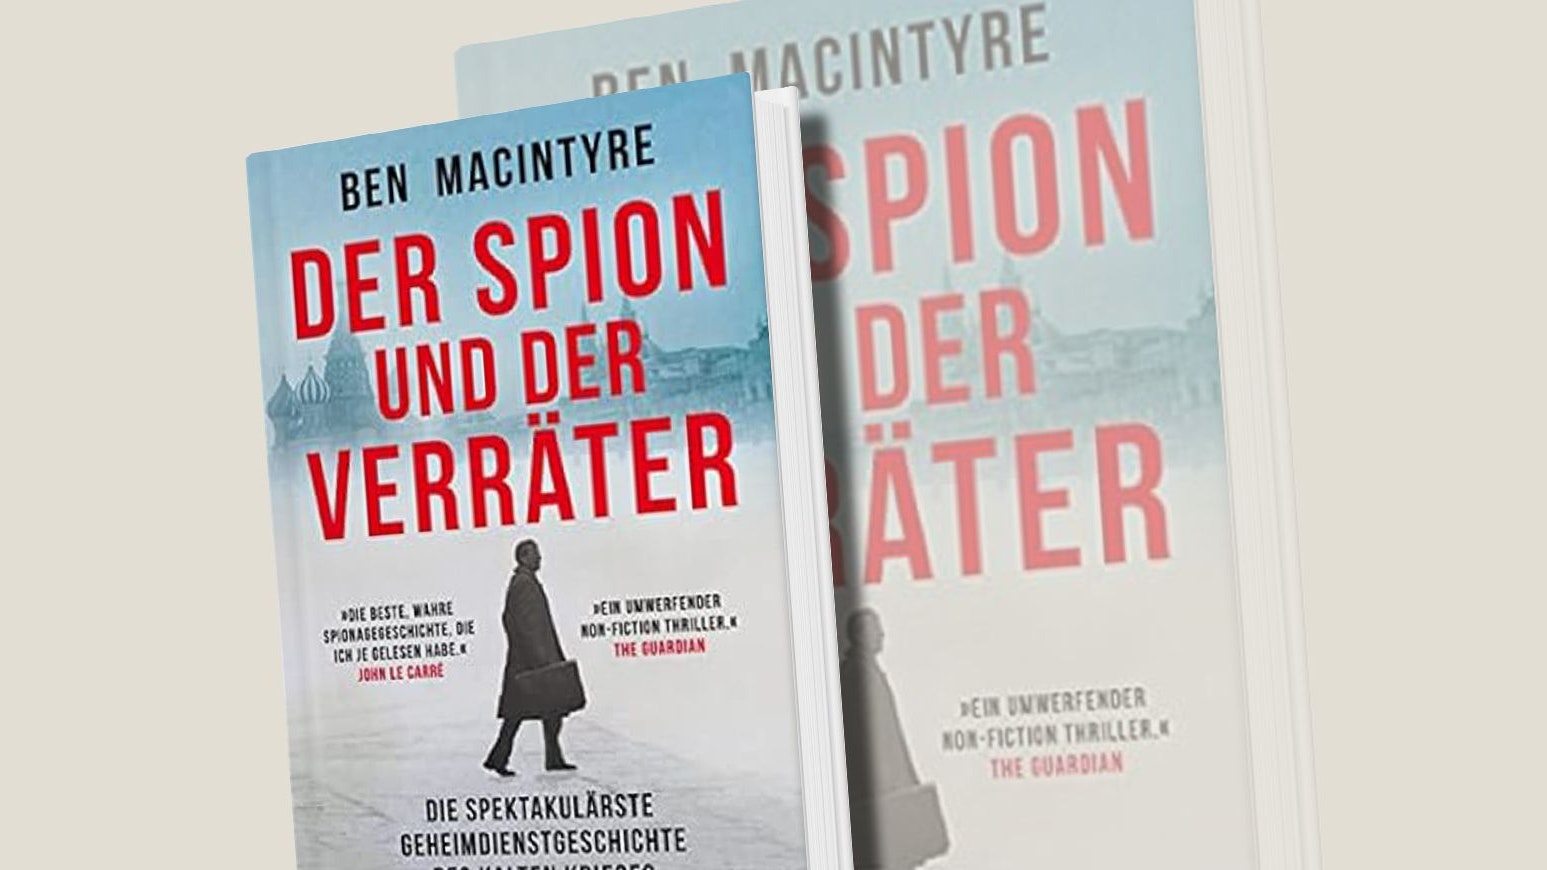 Ben Macintyre, "Der Spion und der Verräter", Insel, 29,50 Euro